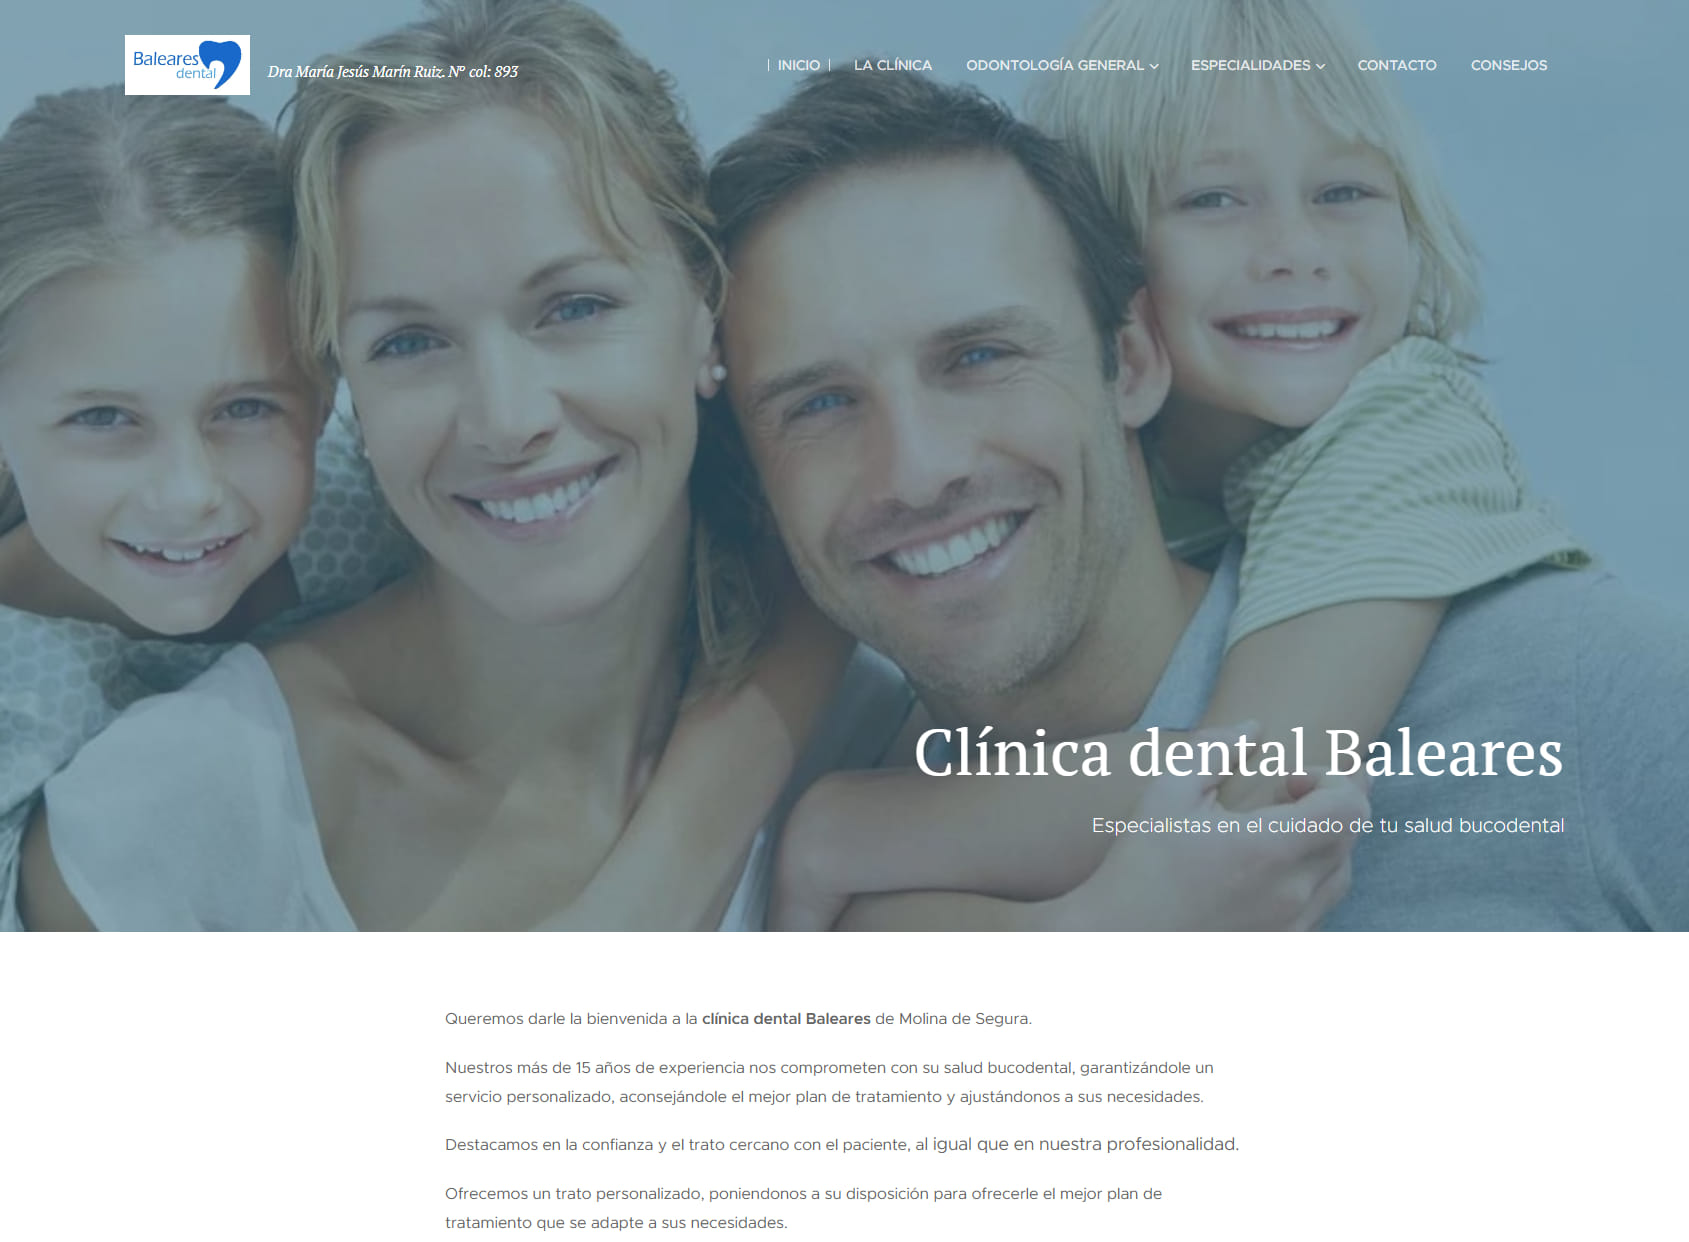 Clínica Dental Baleares Dra María Marín Ruiz Col. 893